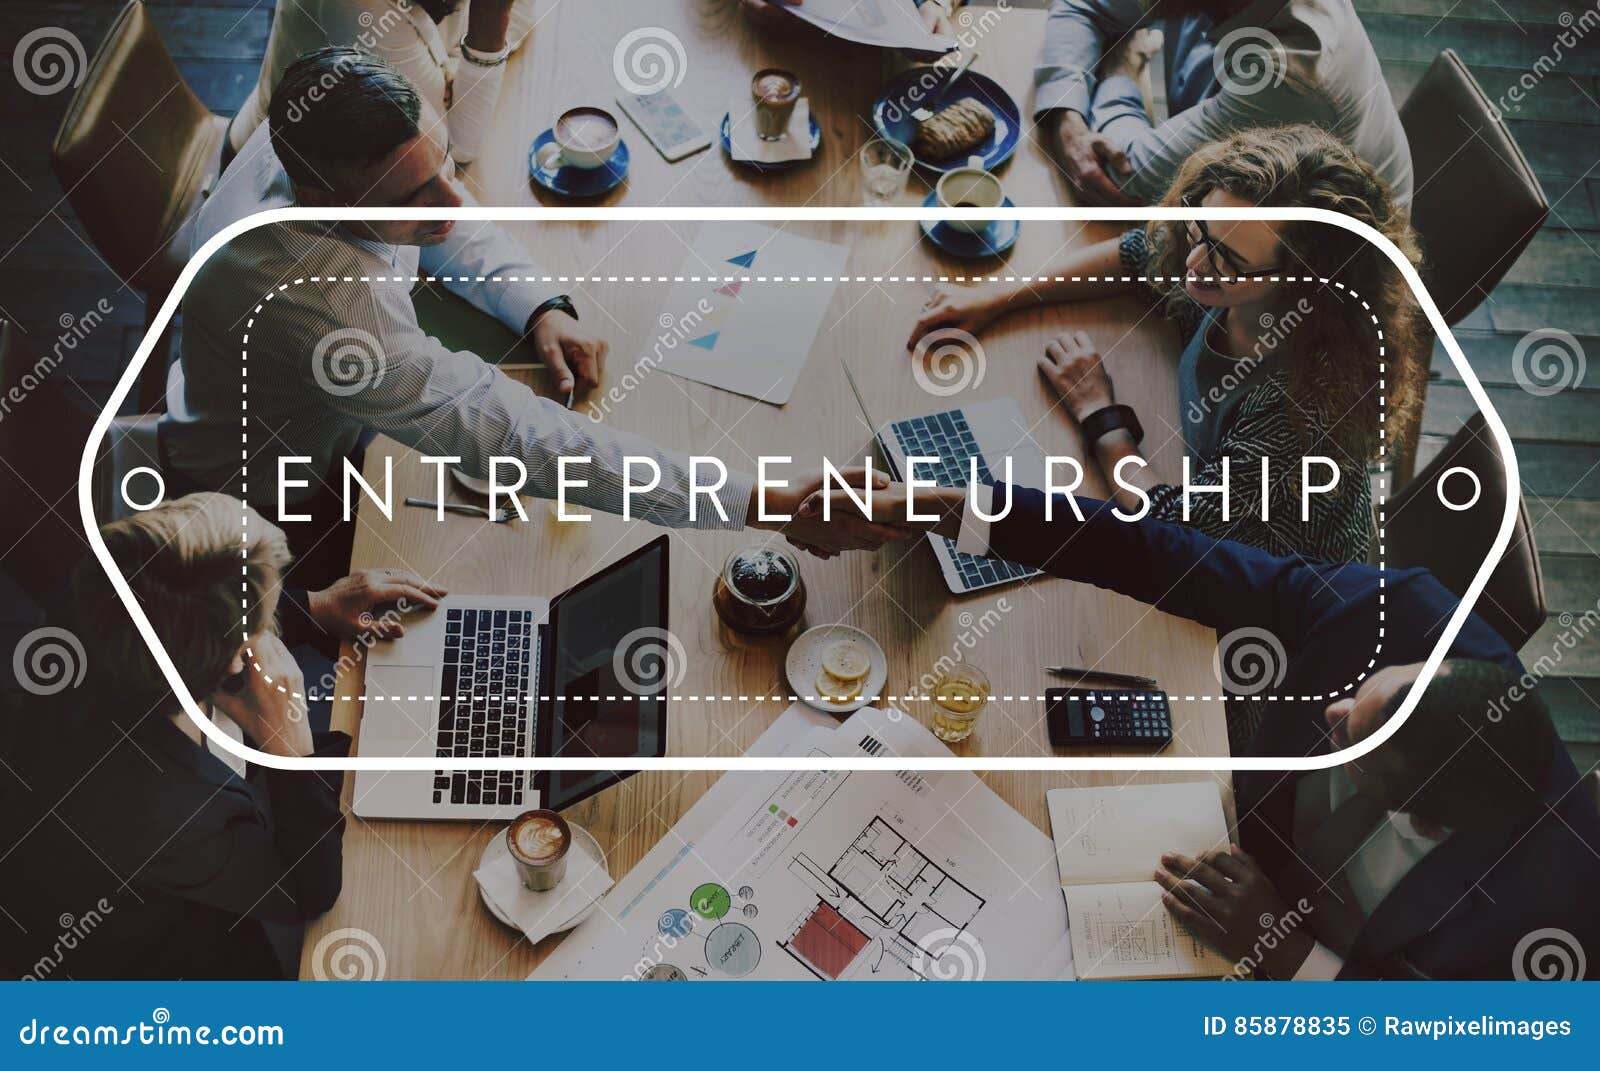 entrepreneurship business organiser startup risk concept